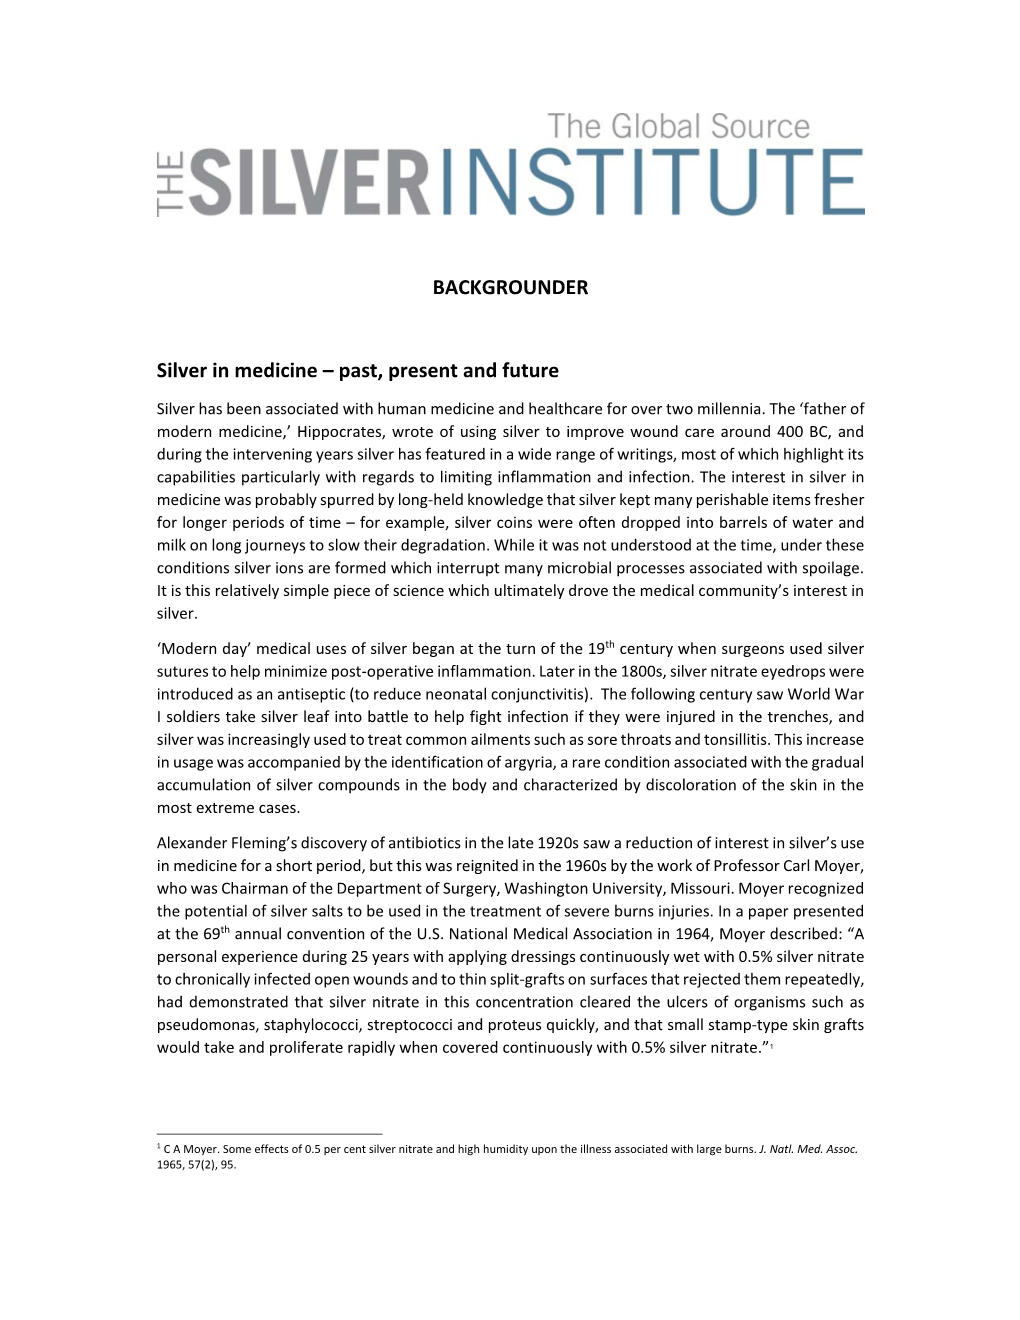 Silver in Medicine – Past, Present and Future